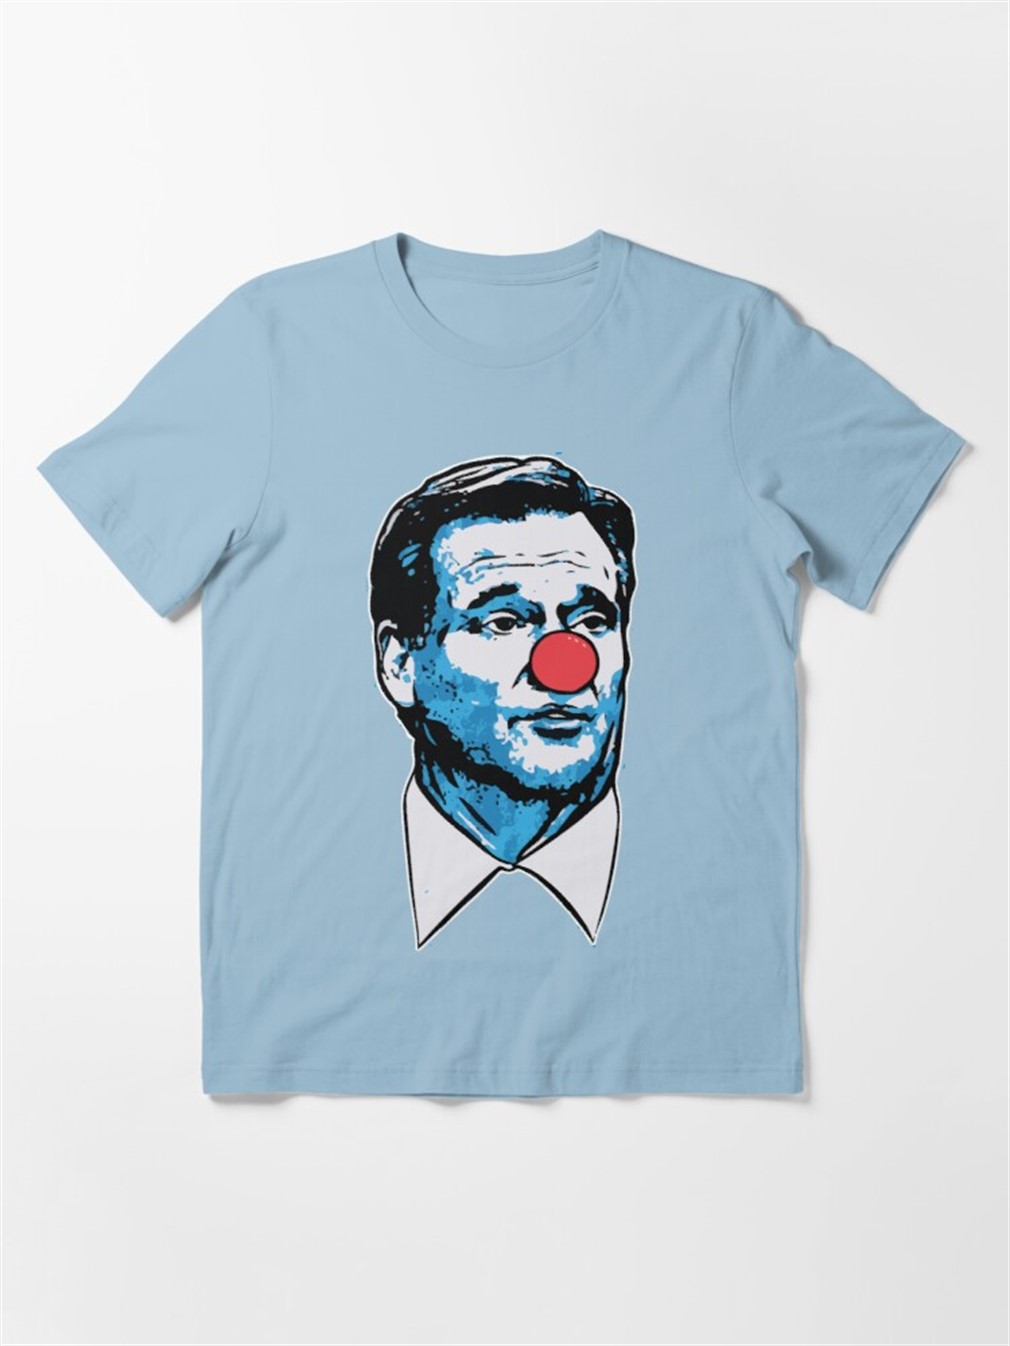 Goodell Clown T-shirt Essential T-shirt